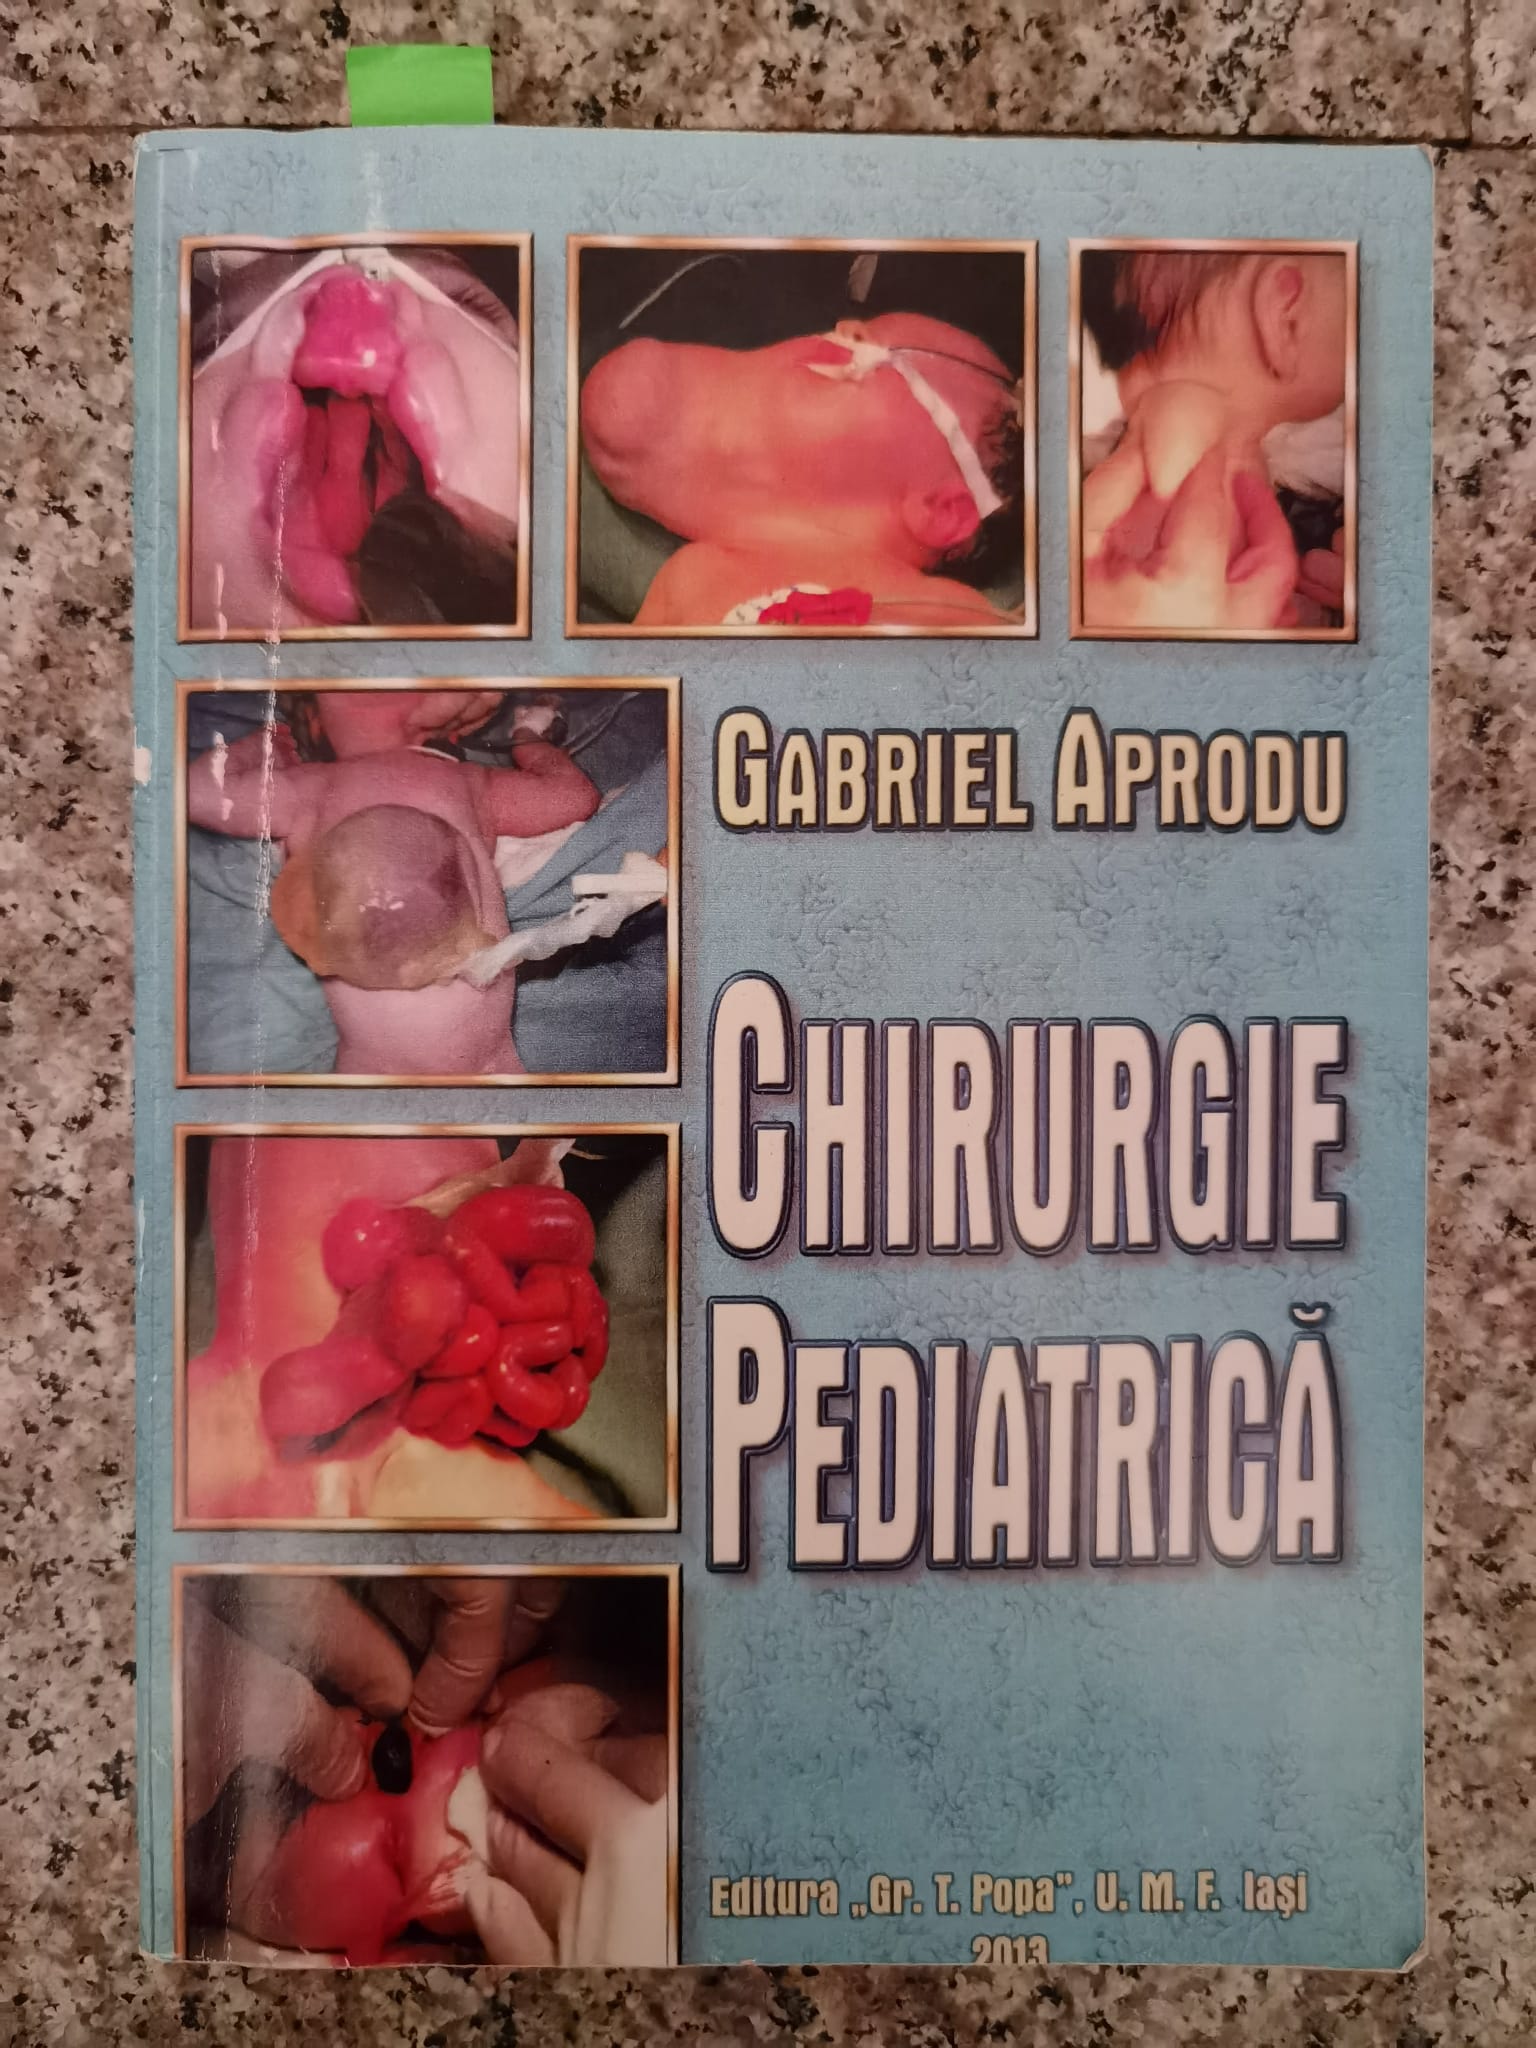 chirurgie pediatrica                                                                                 gabriel aprodu                                                                                      